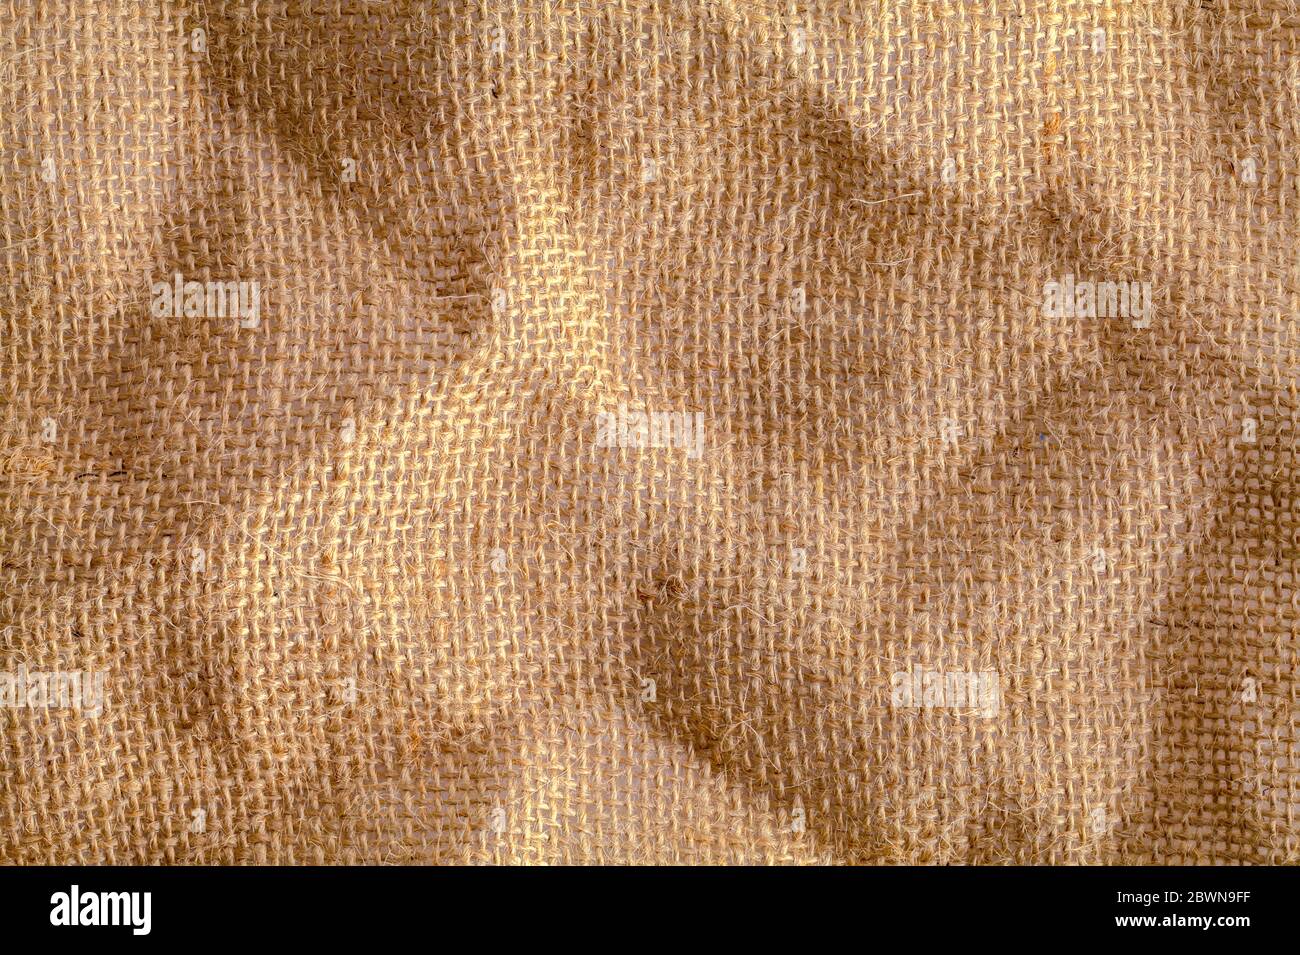 Brauner Burlap Stoff mit rauer und dicker Faser Hintergrund. Stockfoto